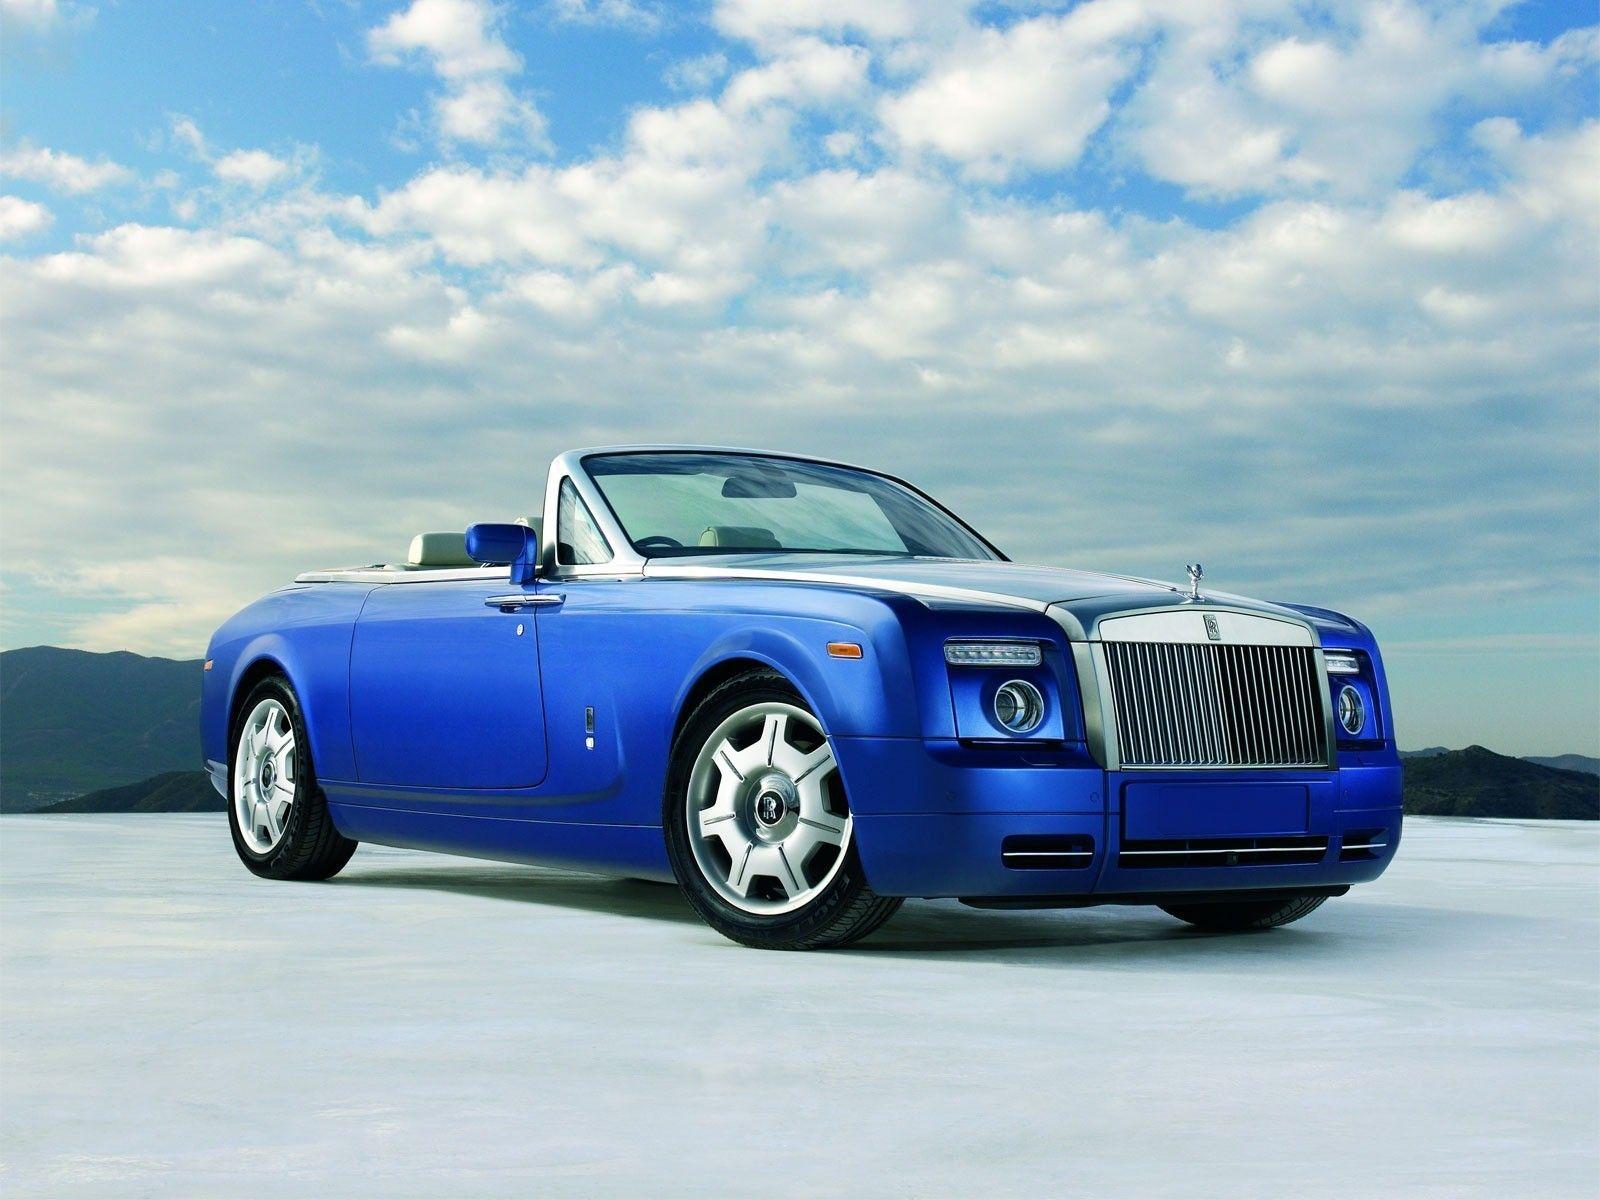 Latest Rolls Royce Car Wallpaper Widescreen High Resolution Cars HD